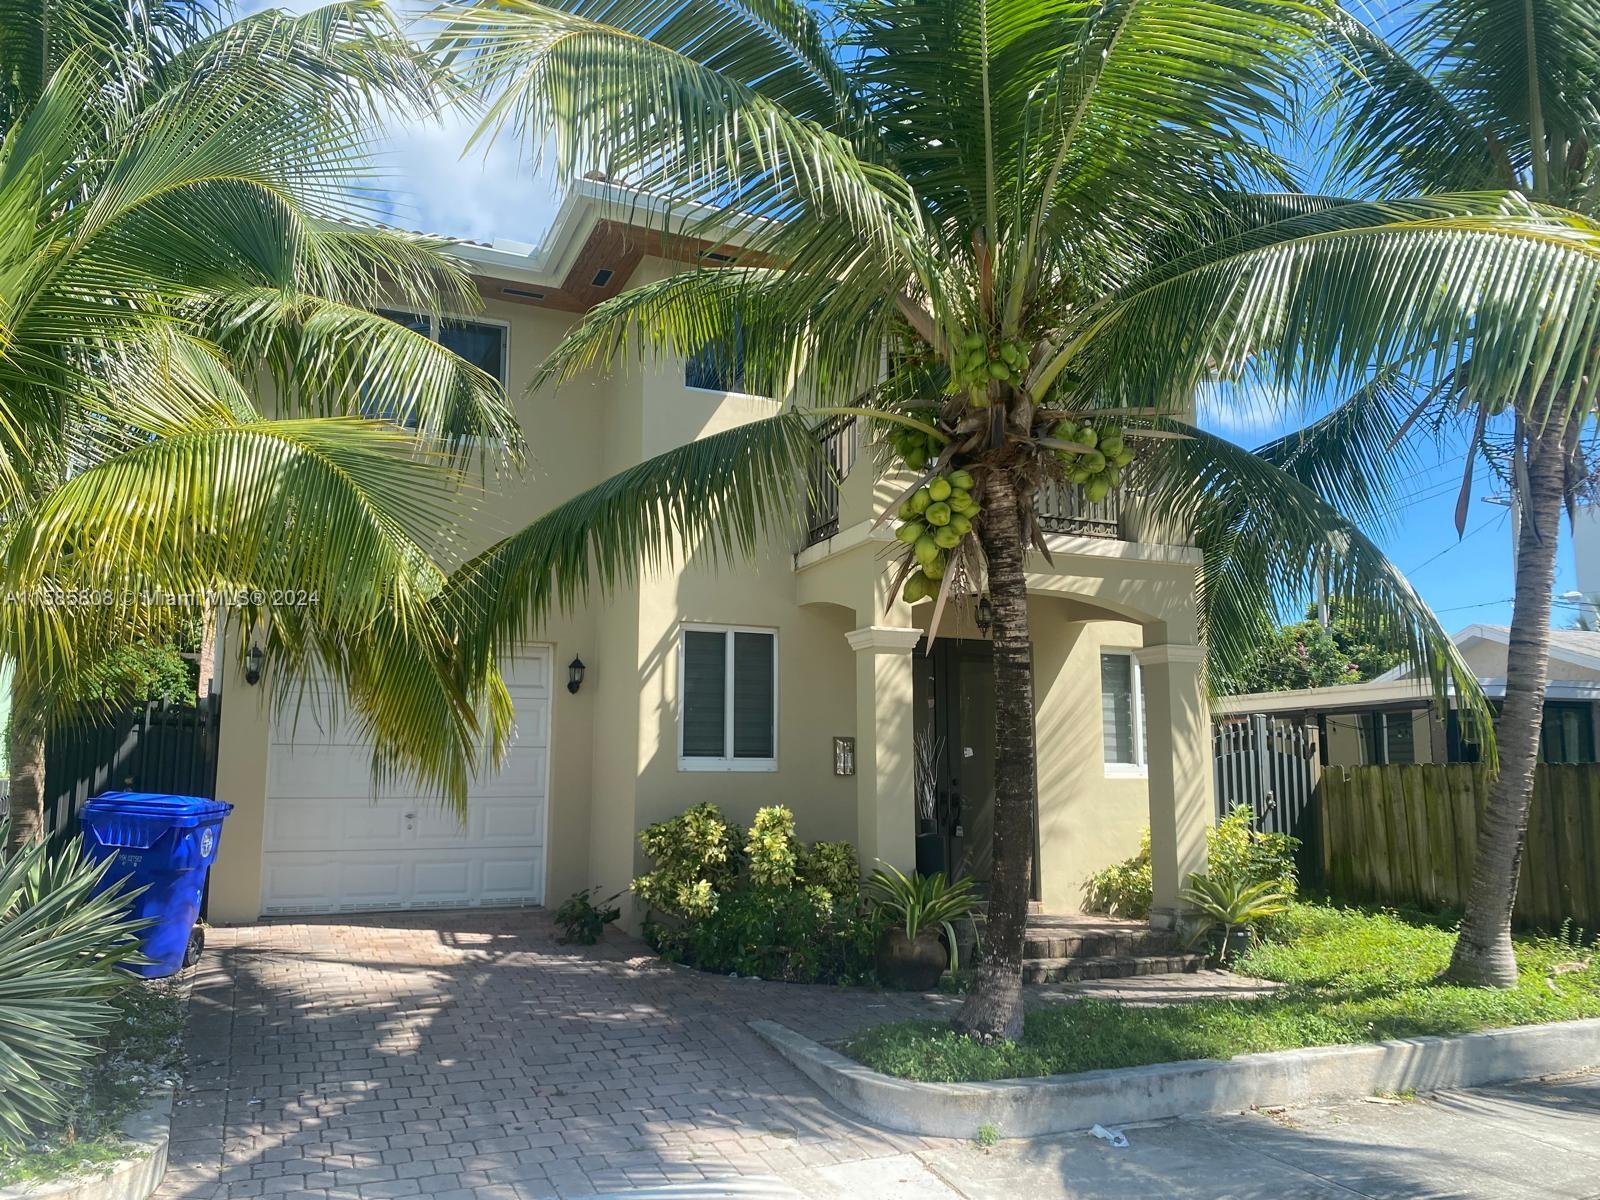 View Miami, FL 33130 house